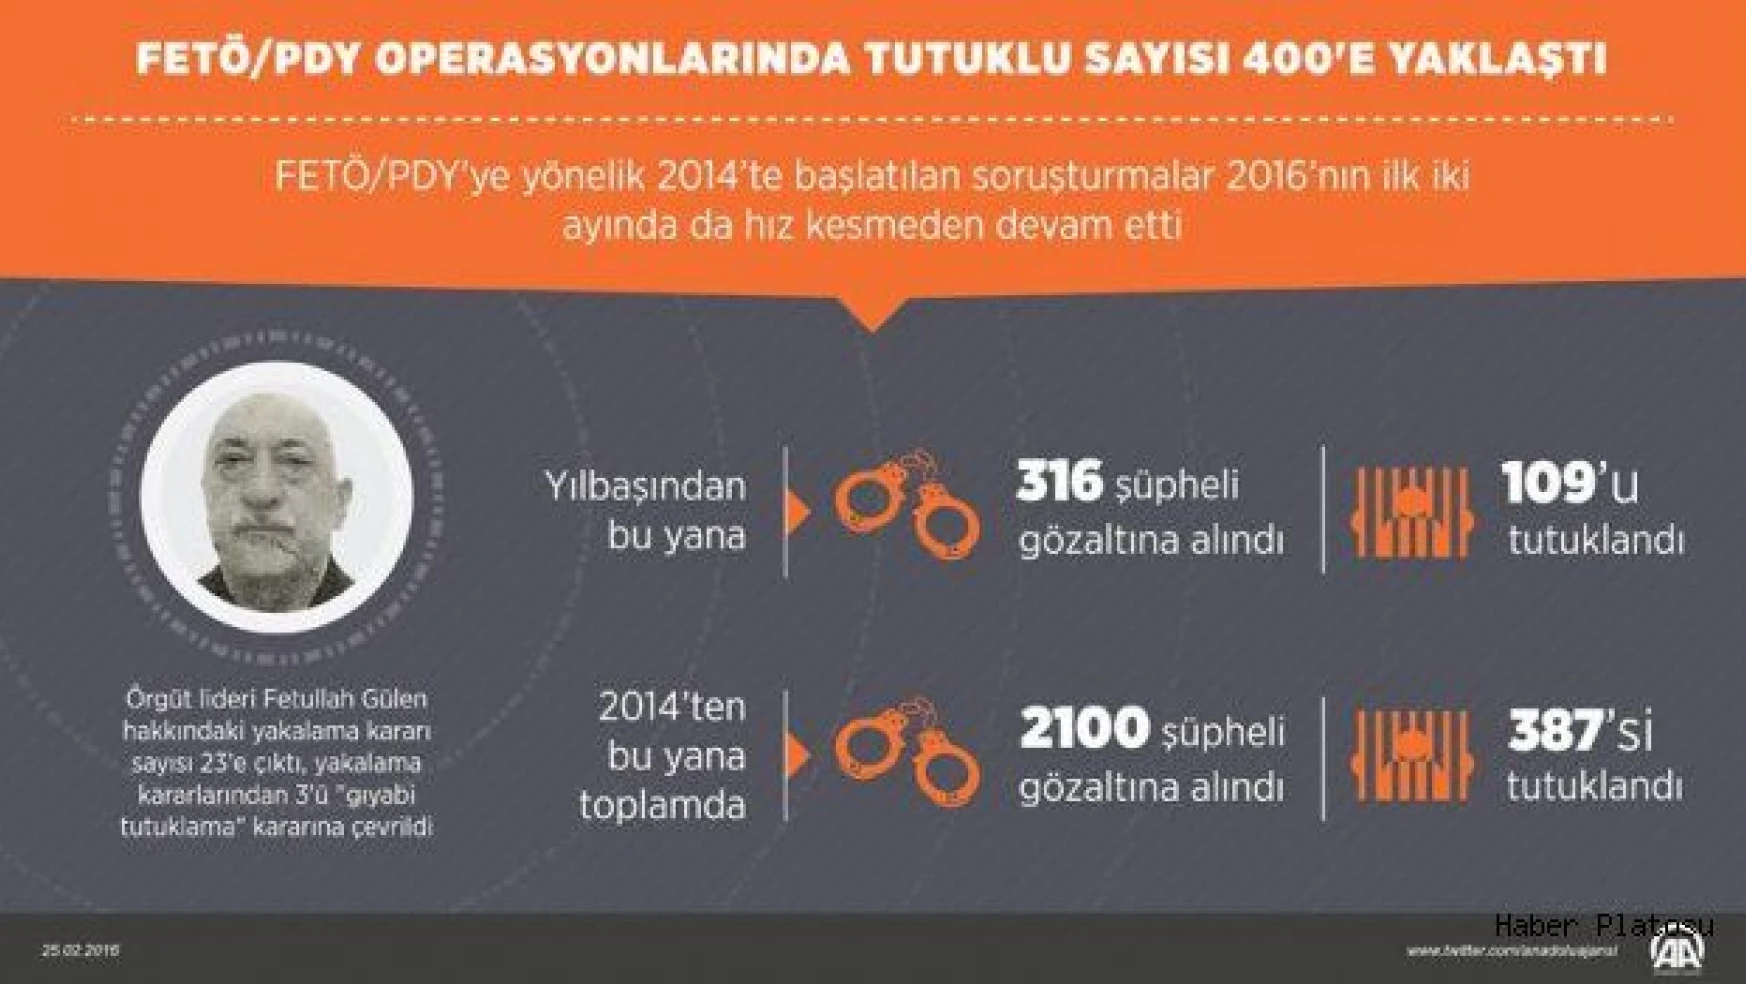 FETÖ/PDY operasyonlarında tutuklu sayısı 400'e yaklaştı